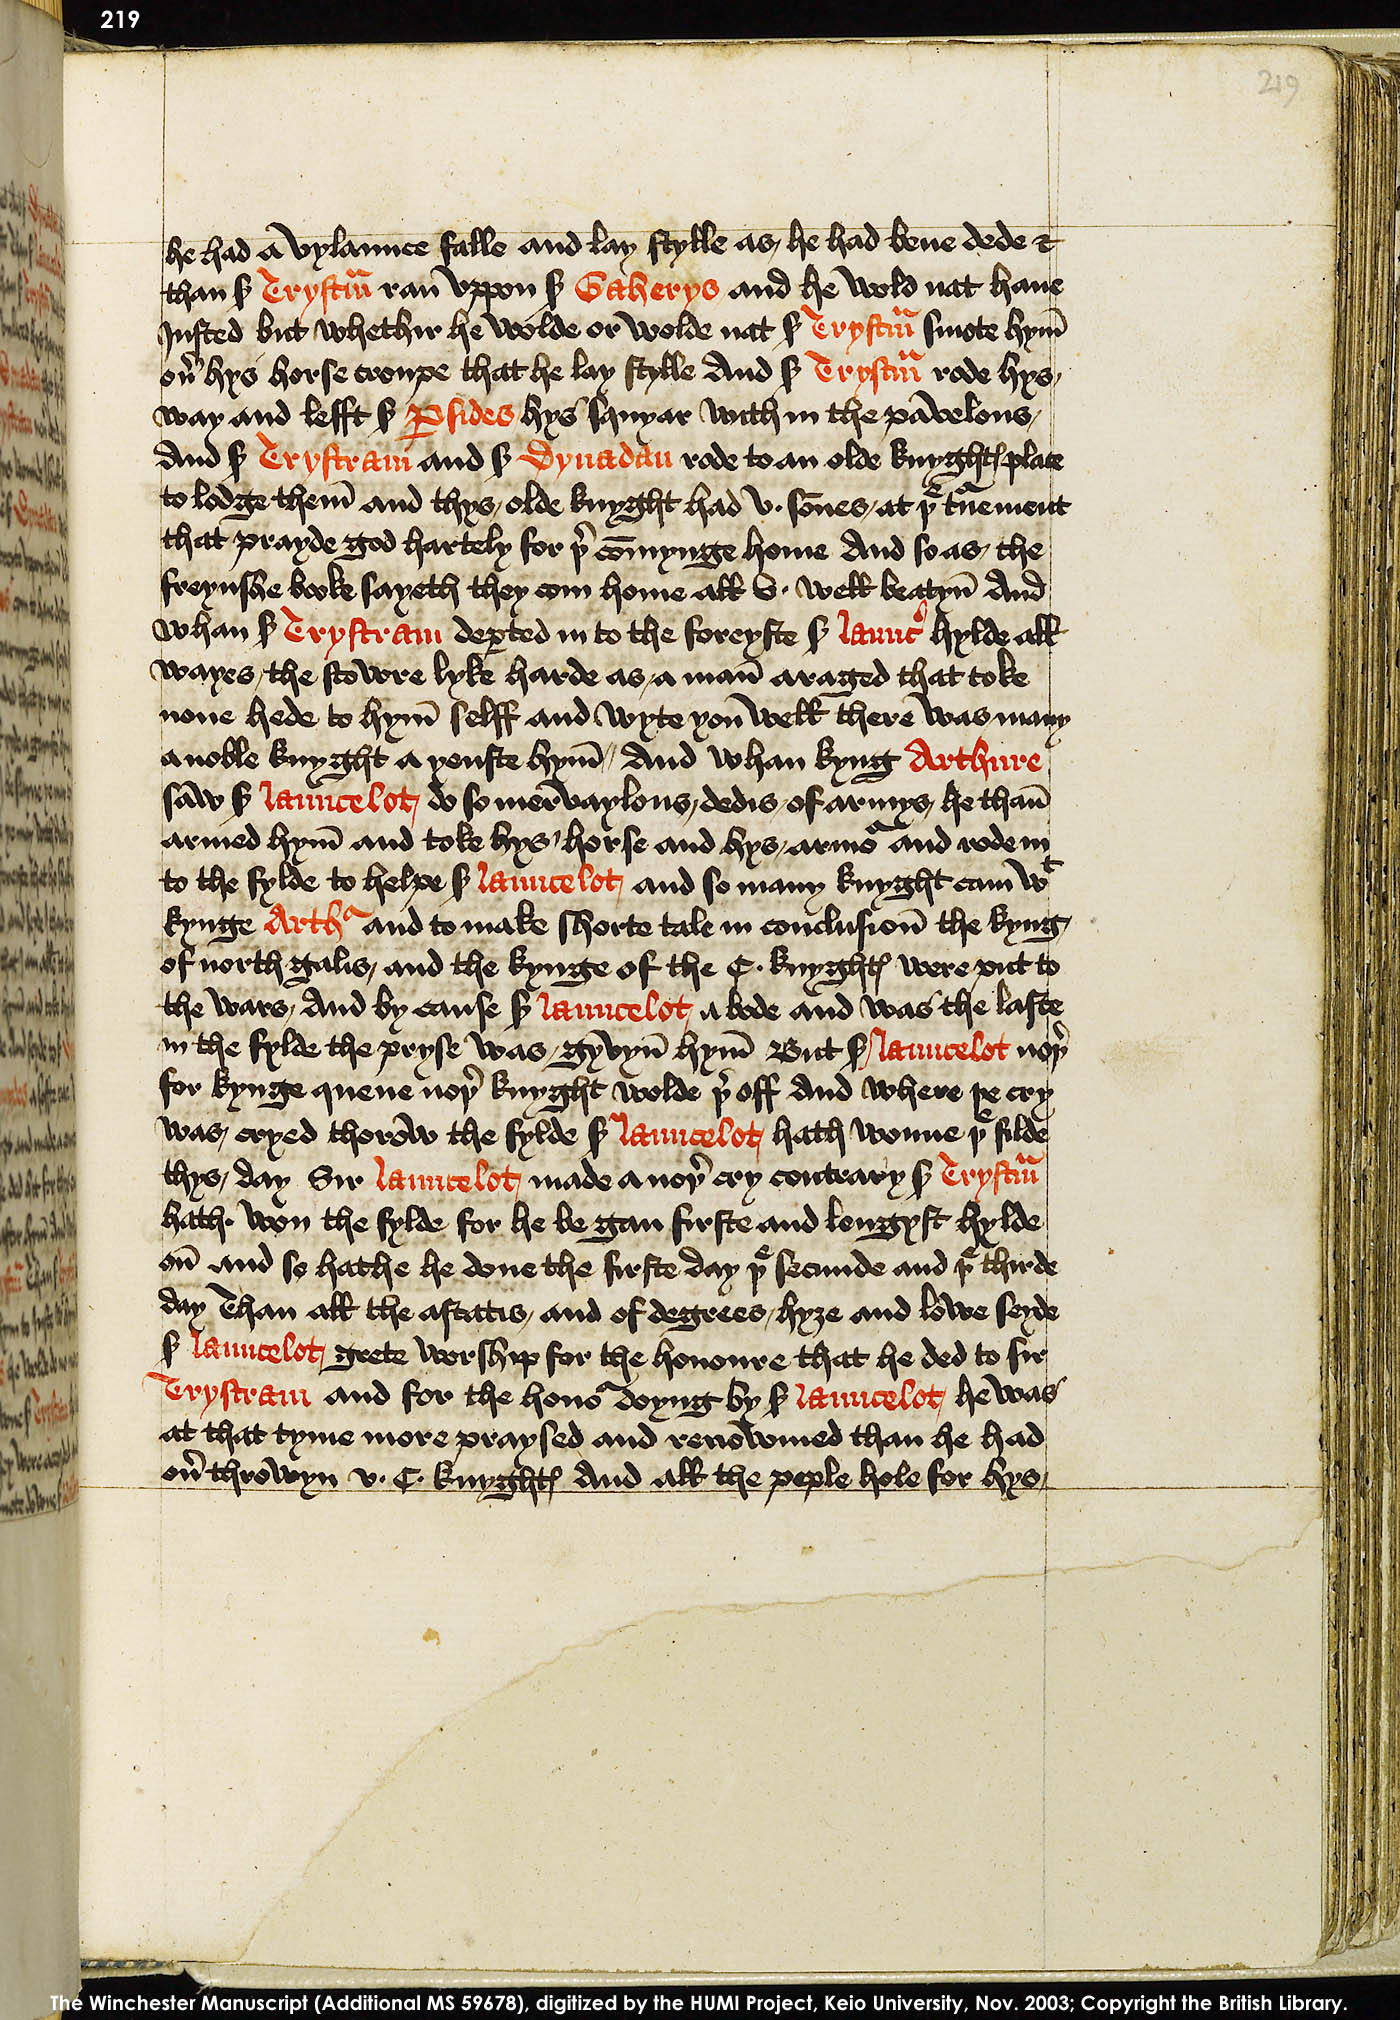 Folio 219r